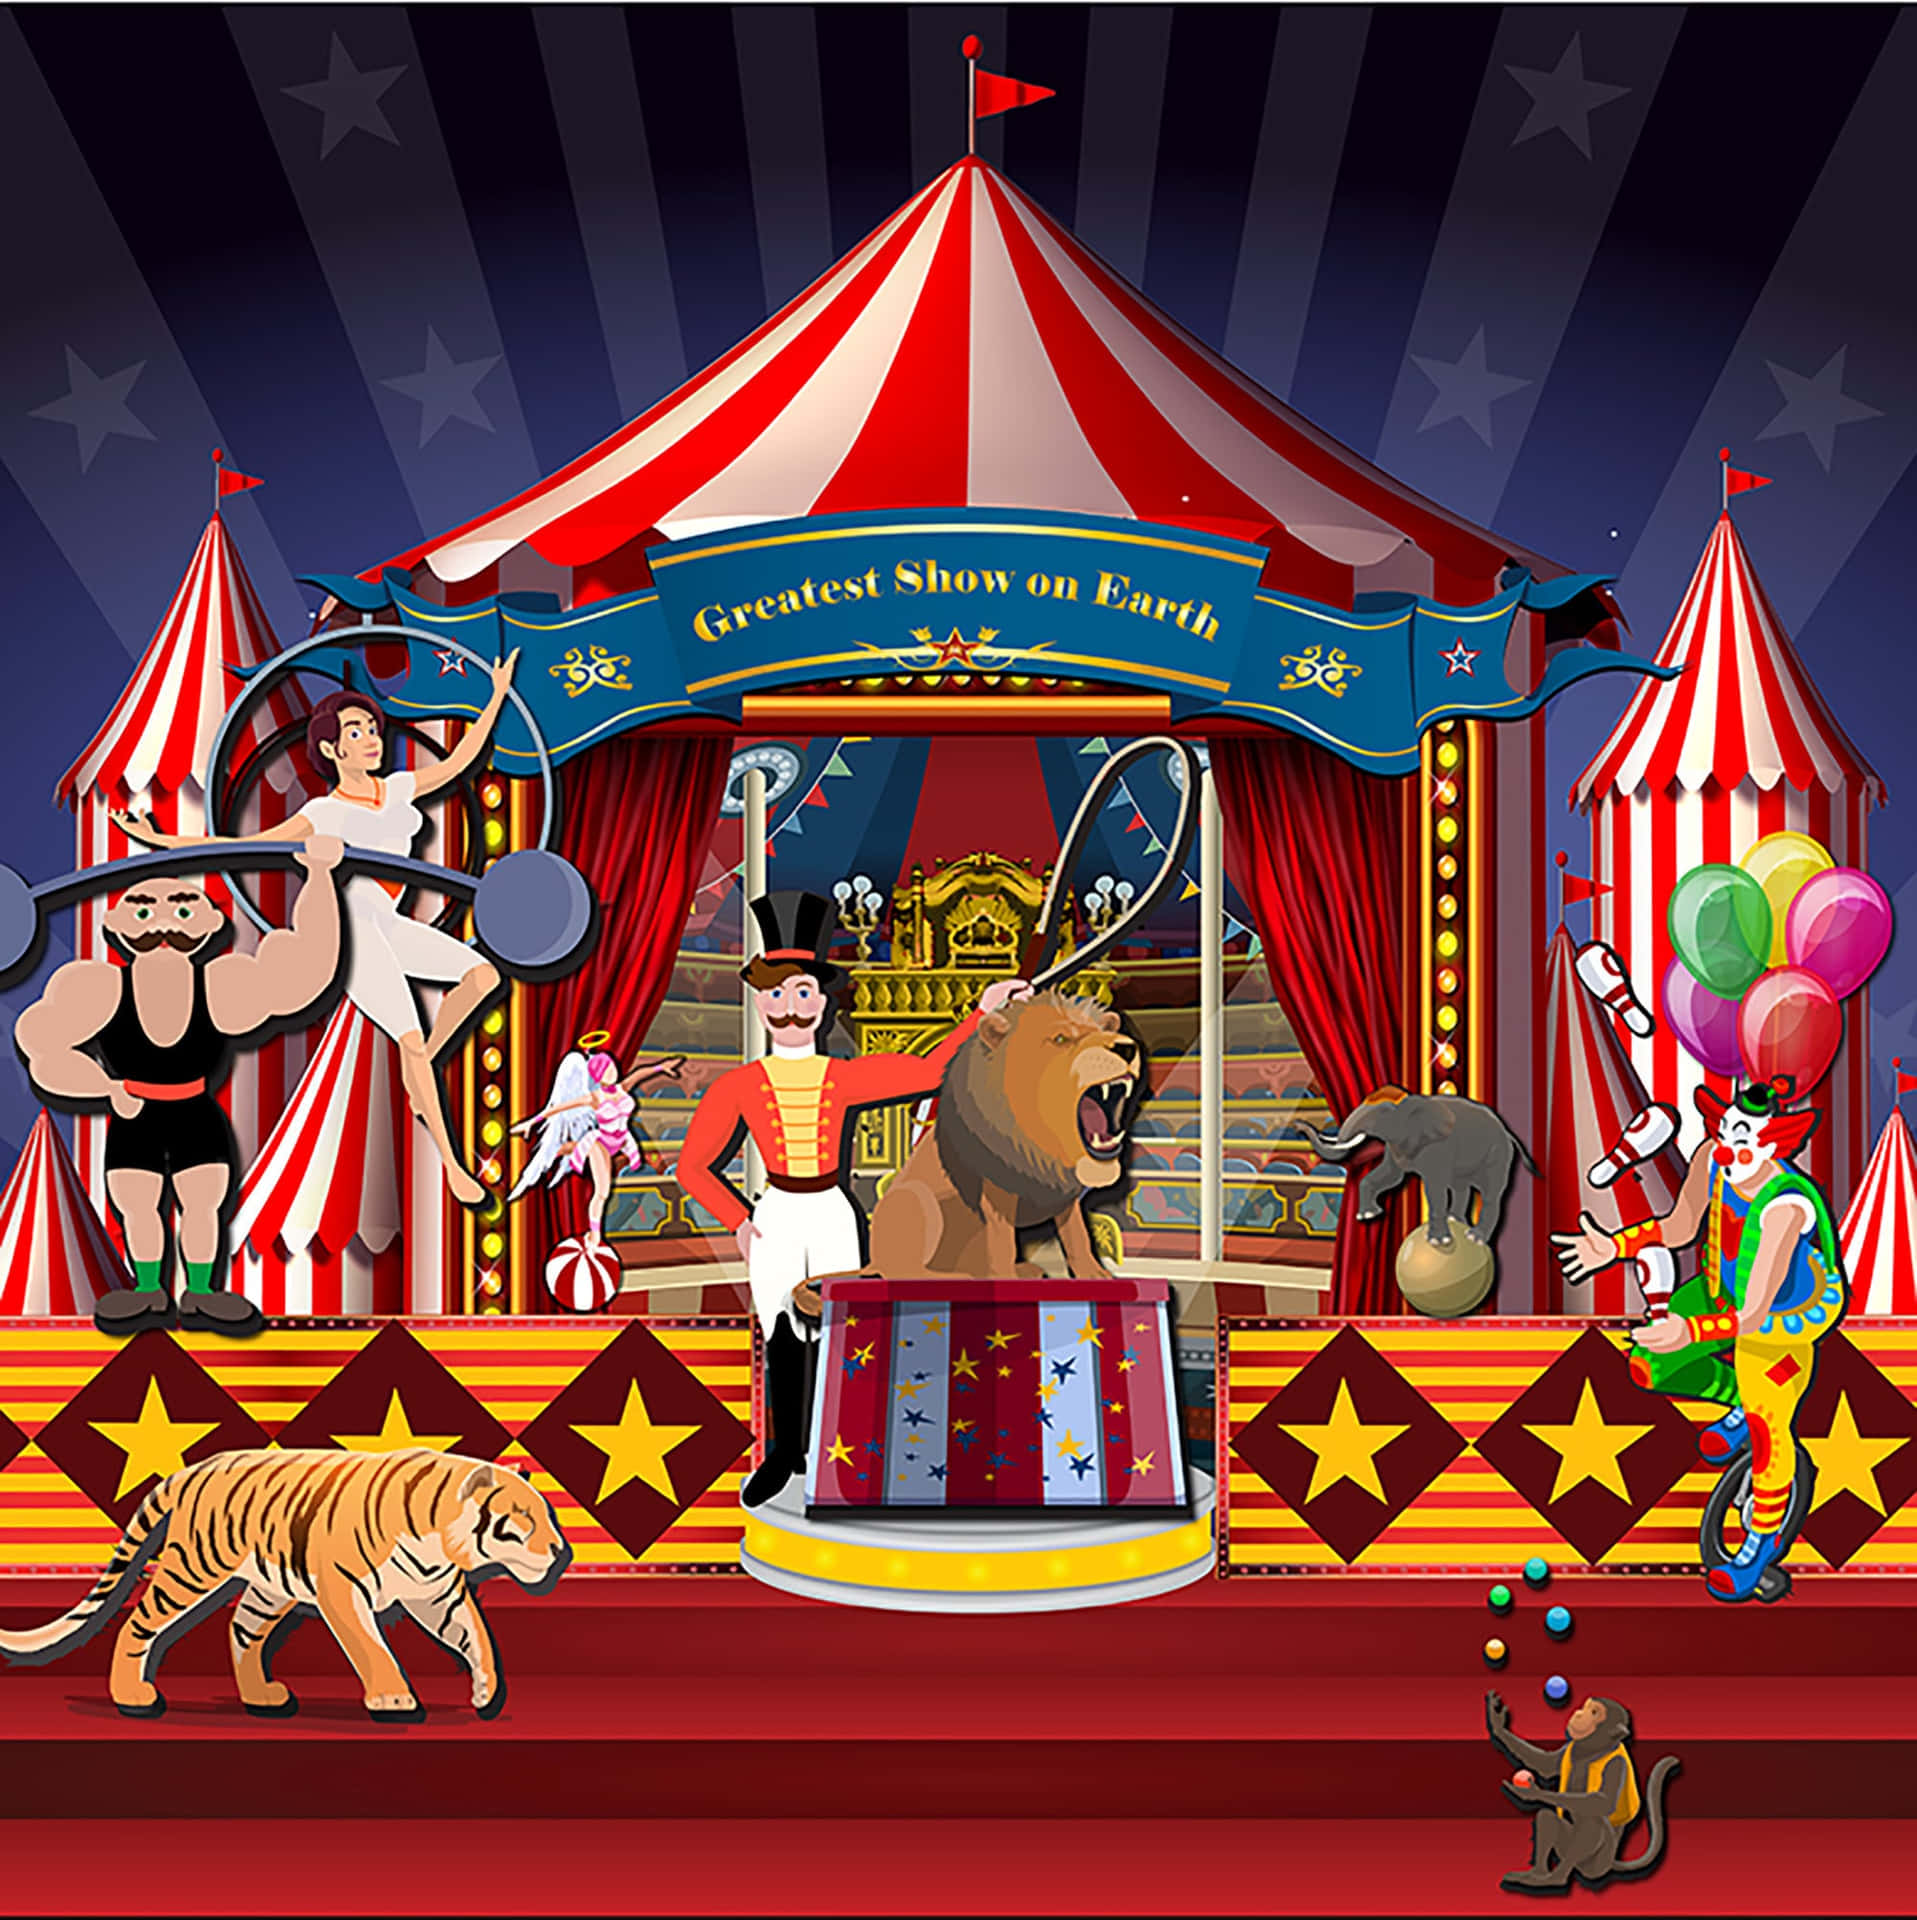 Spaßund Unterhaltung Für Die Ganze Familie Erwarten Sie Im Zirkus.